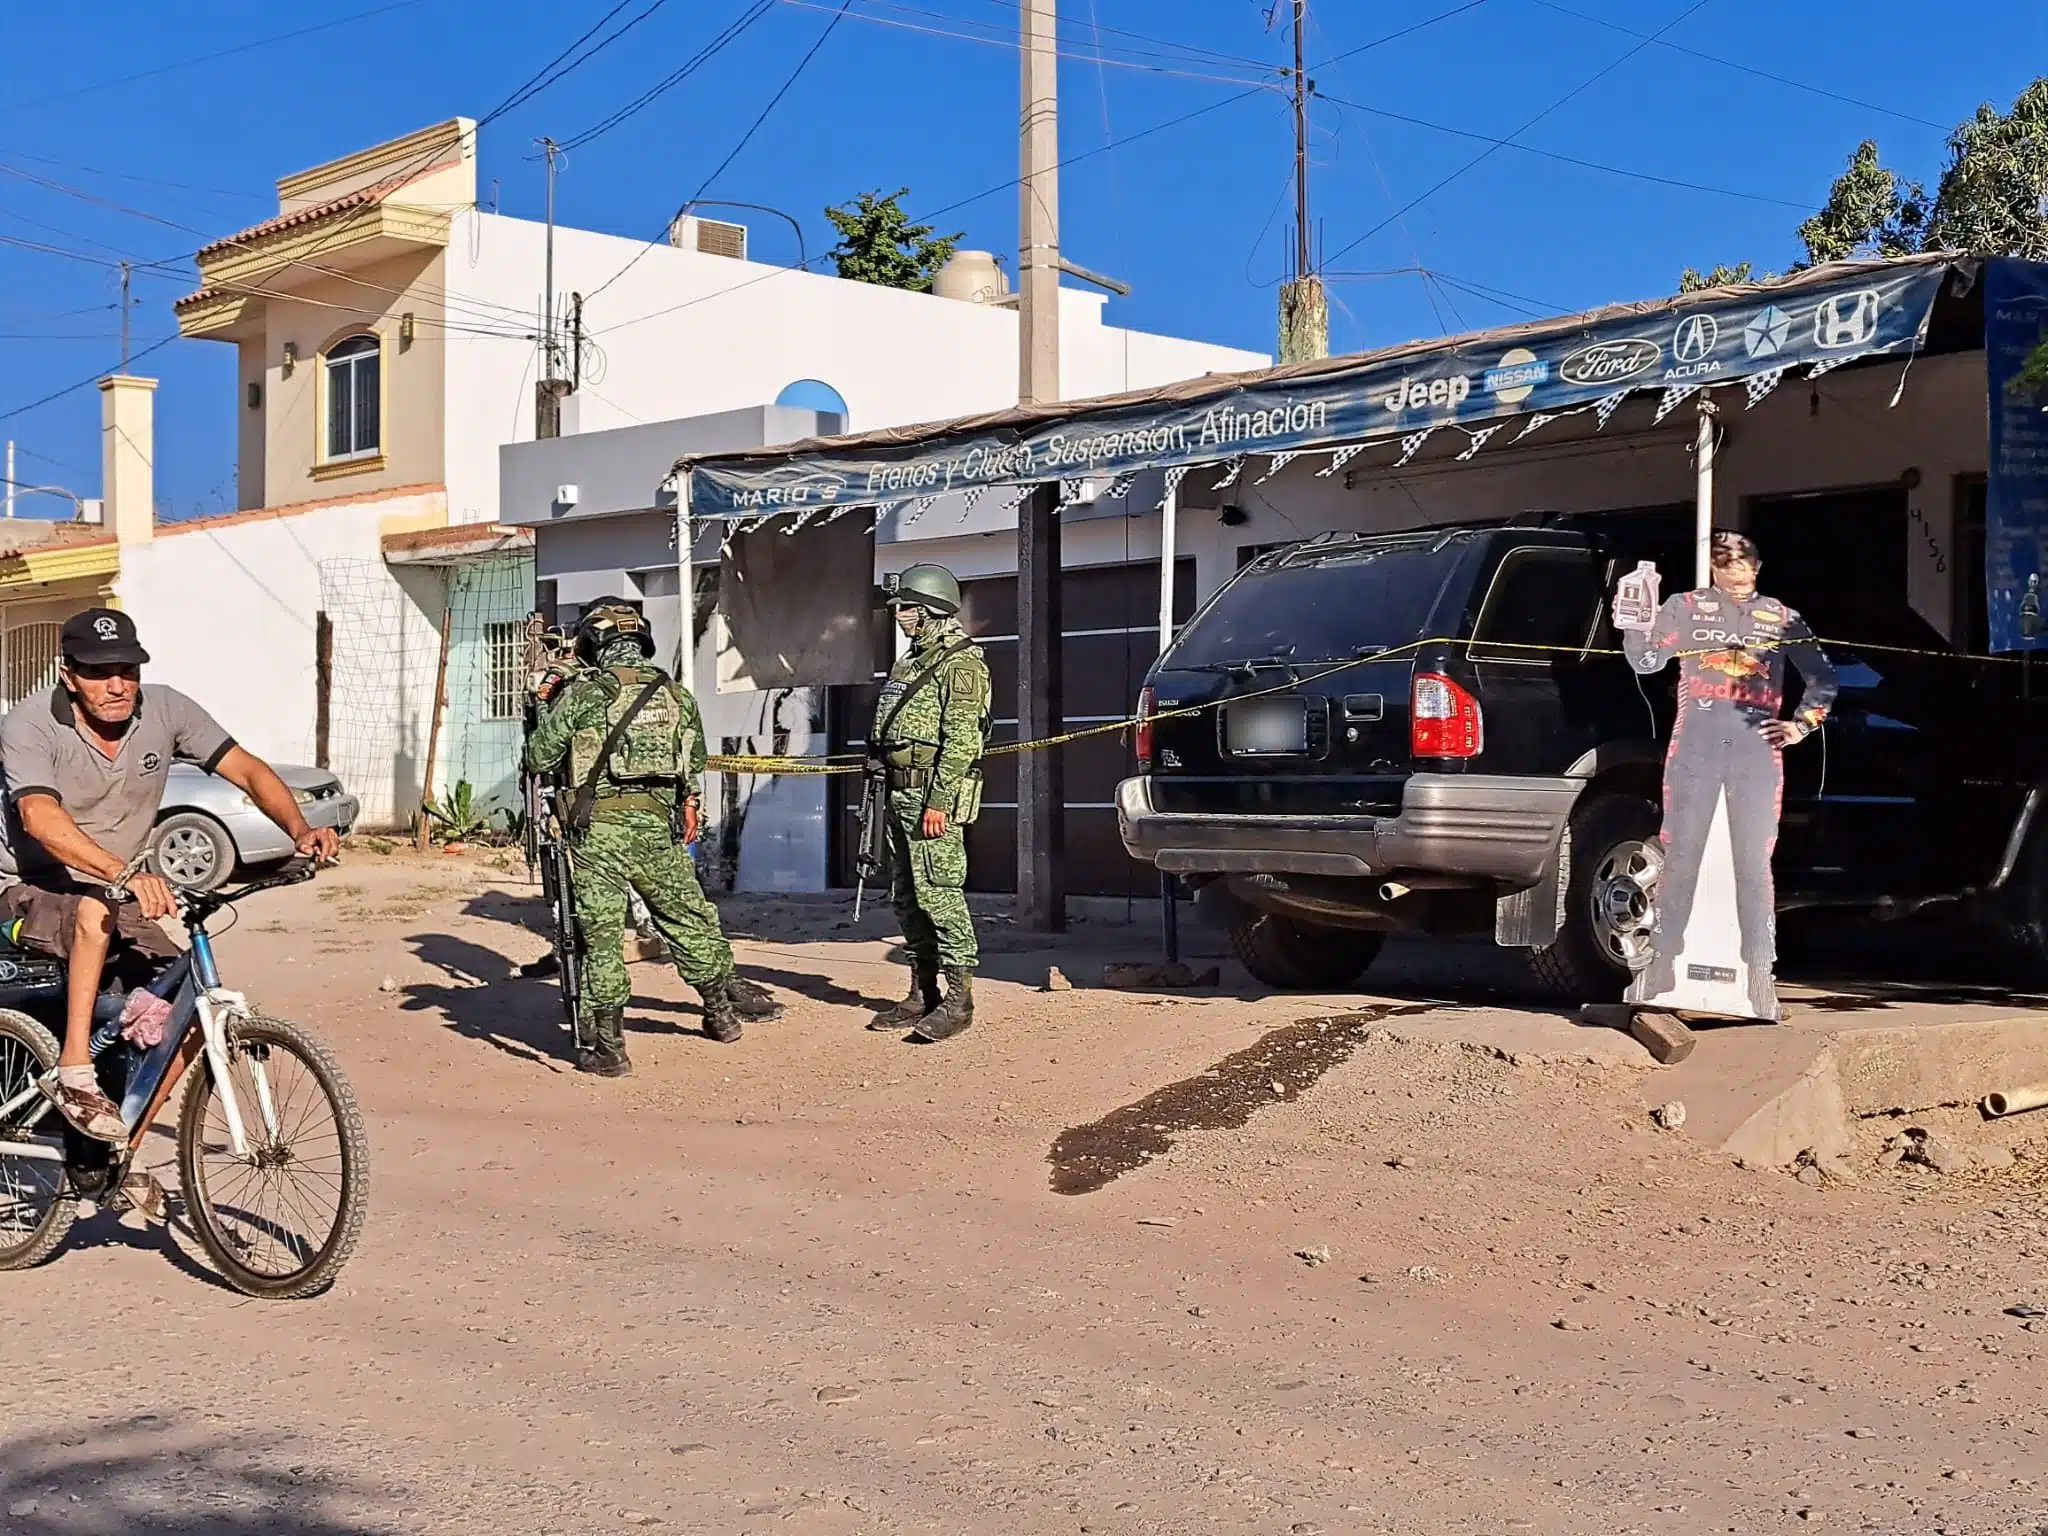 Militares y elementos de la Policía Estatal en el lugar donde dispararon y privaron de la libertad a Juan Francisco en Culiacán